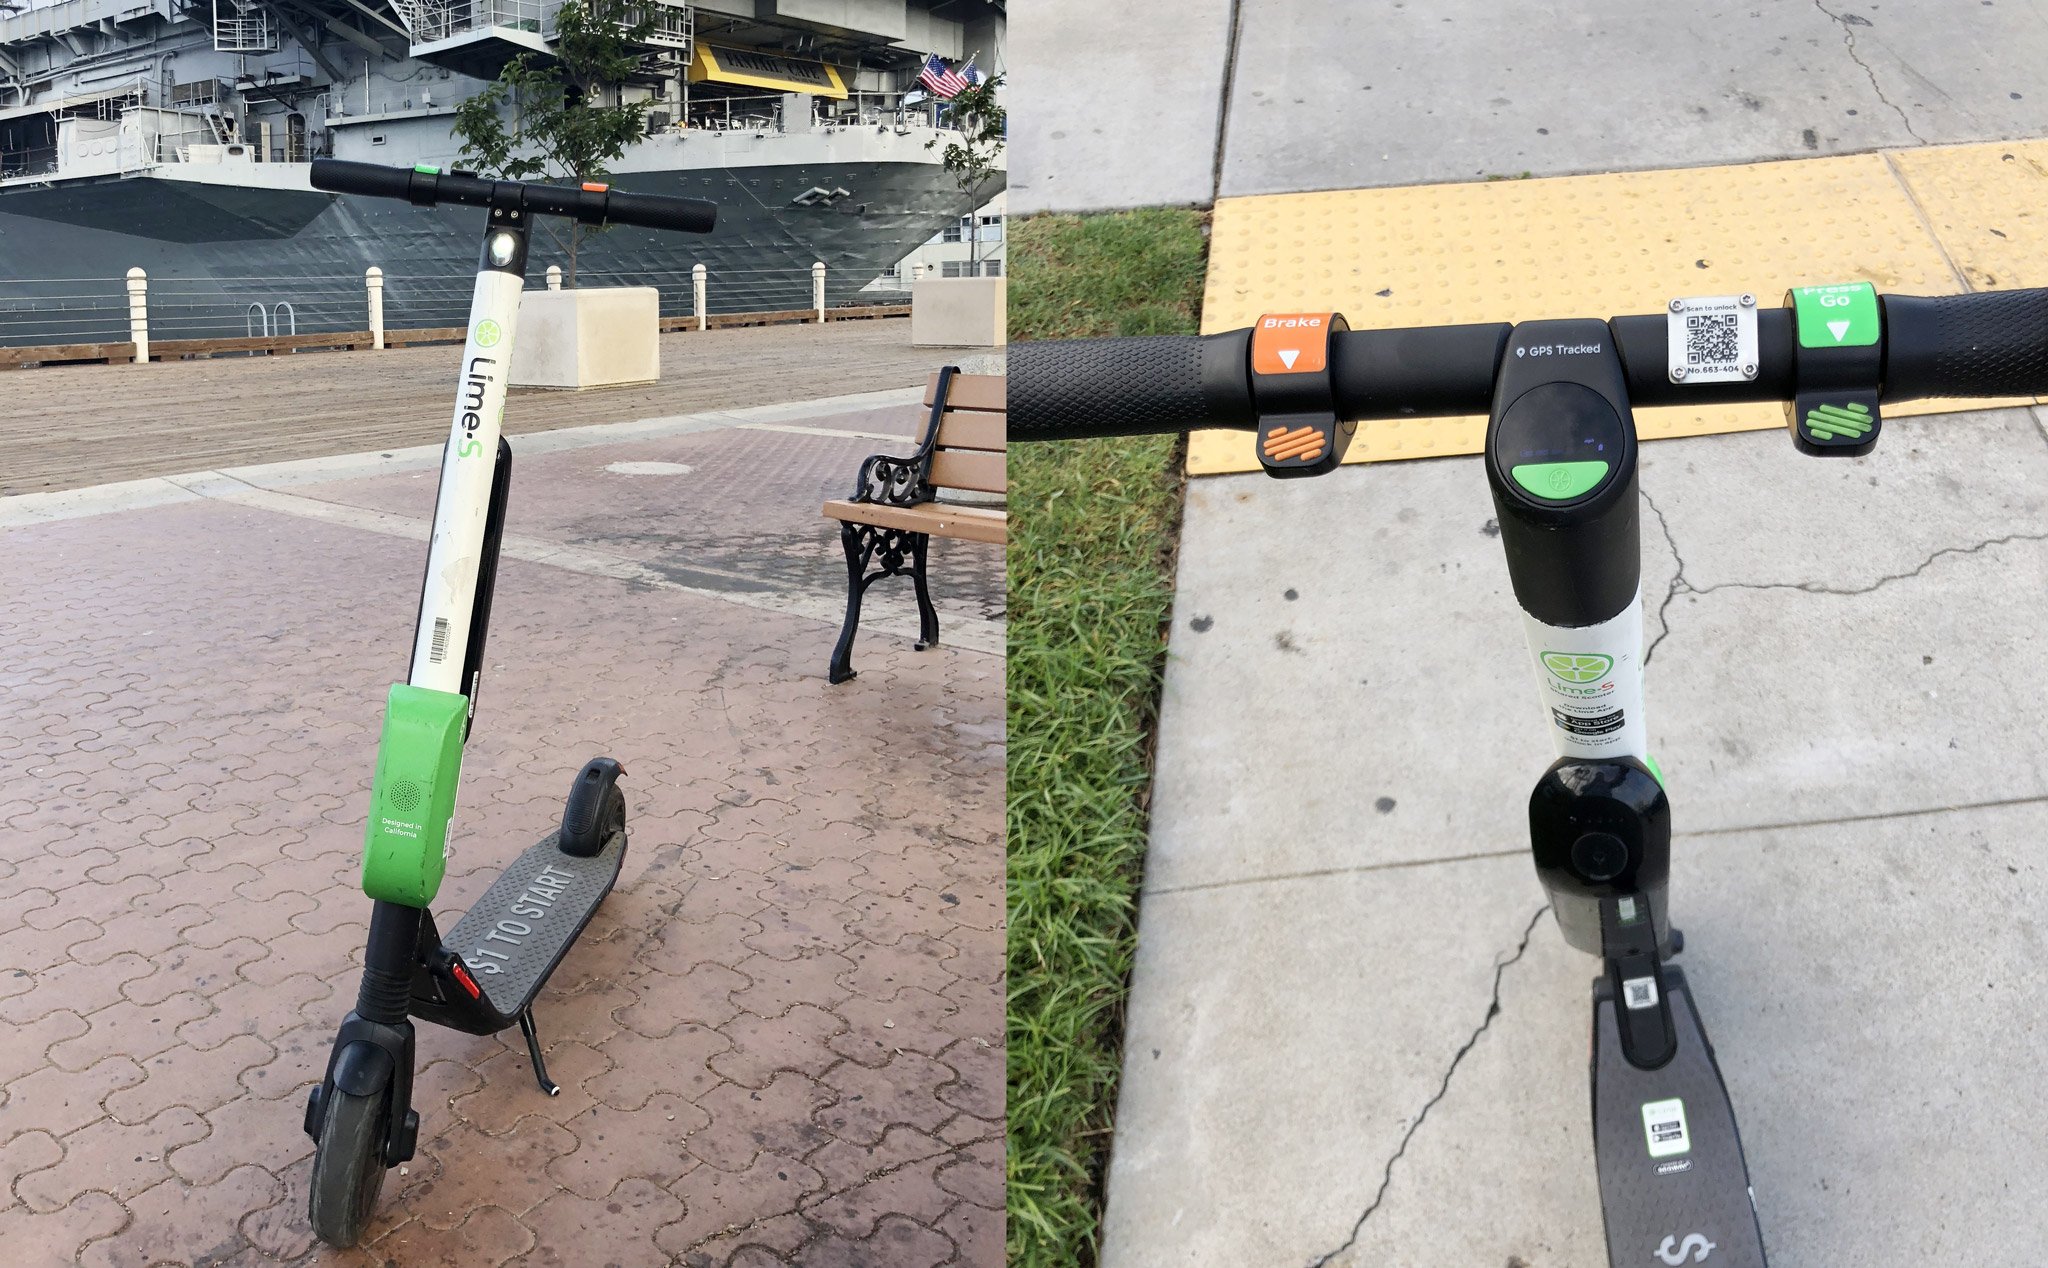 Dùng thử Lime - Dịch vụ chia sẻ xe scooter điện và xe đạp ở San Diego